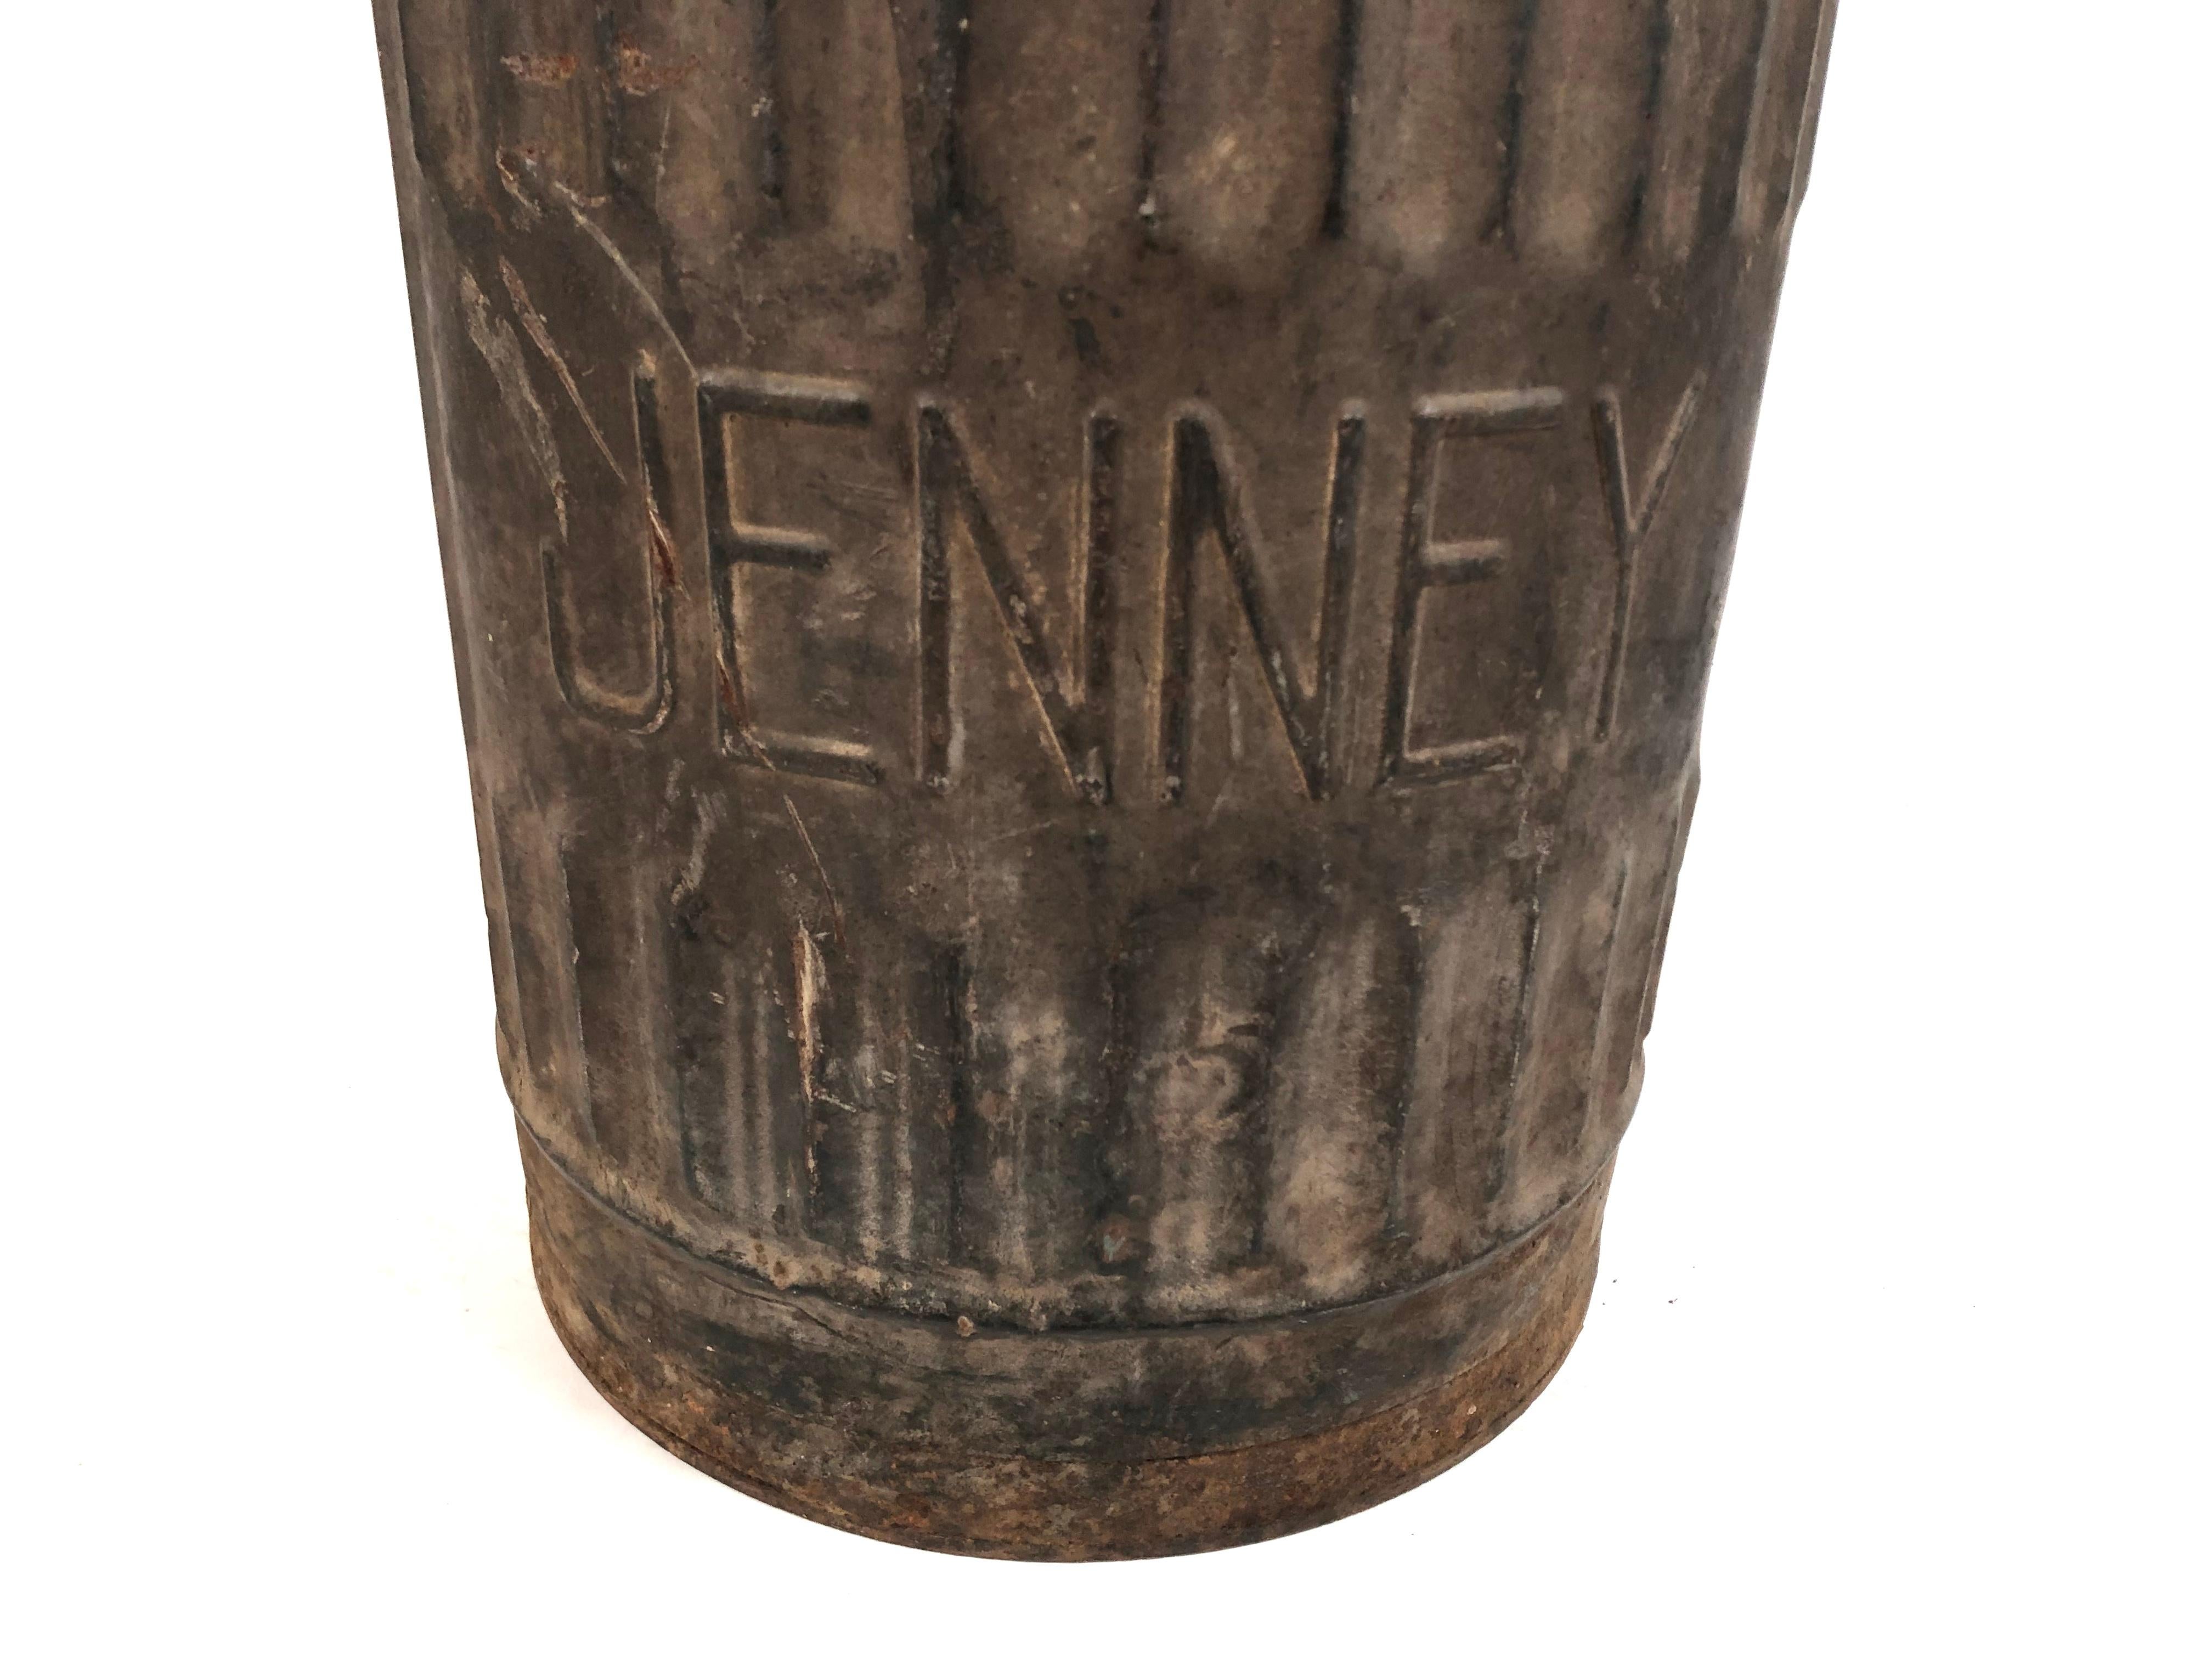 jenney oil company